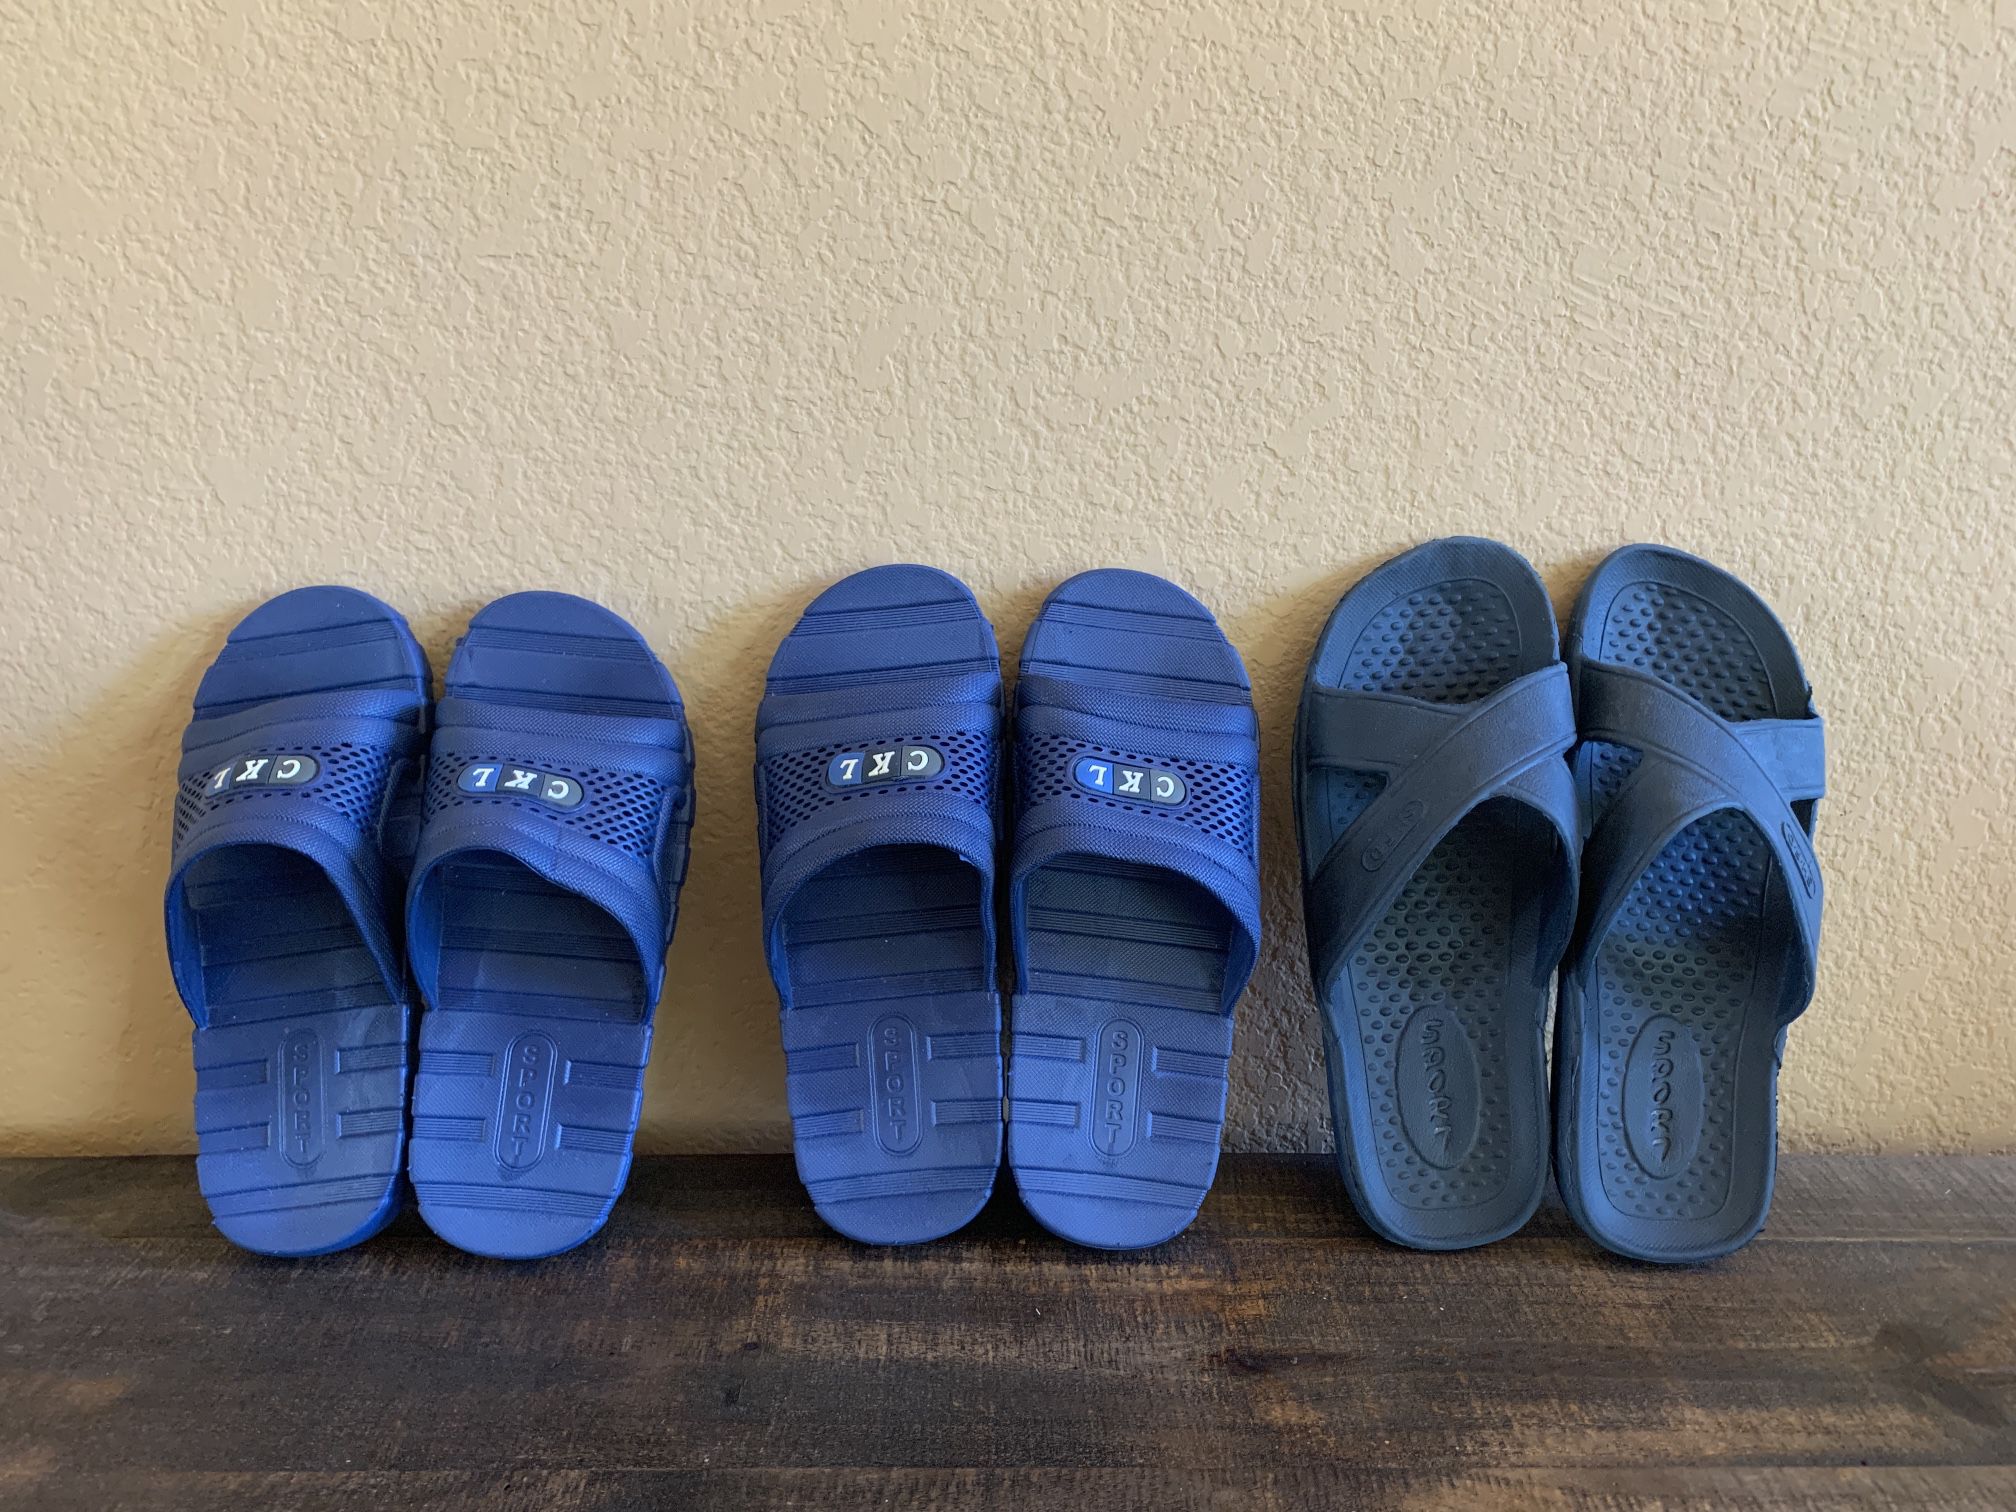 Brand New 3 Pairs of Men’s slippers